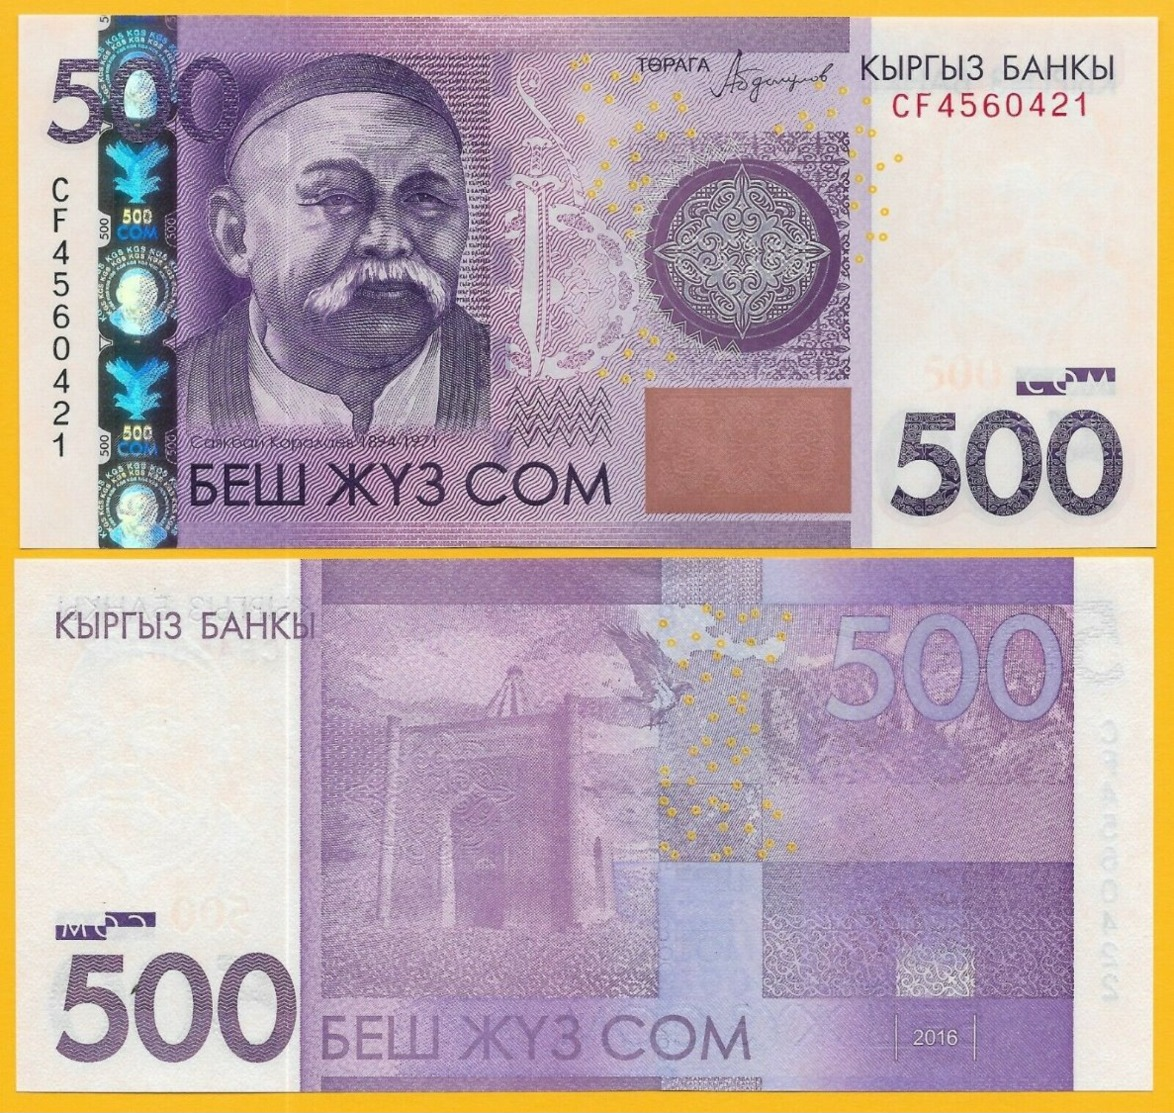 Kyrgyzstan 500 Som P-28b 2016 UNC Banknote - Kyrgyzstan